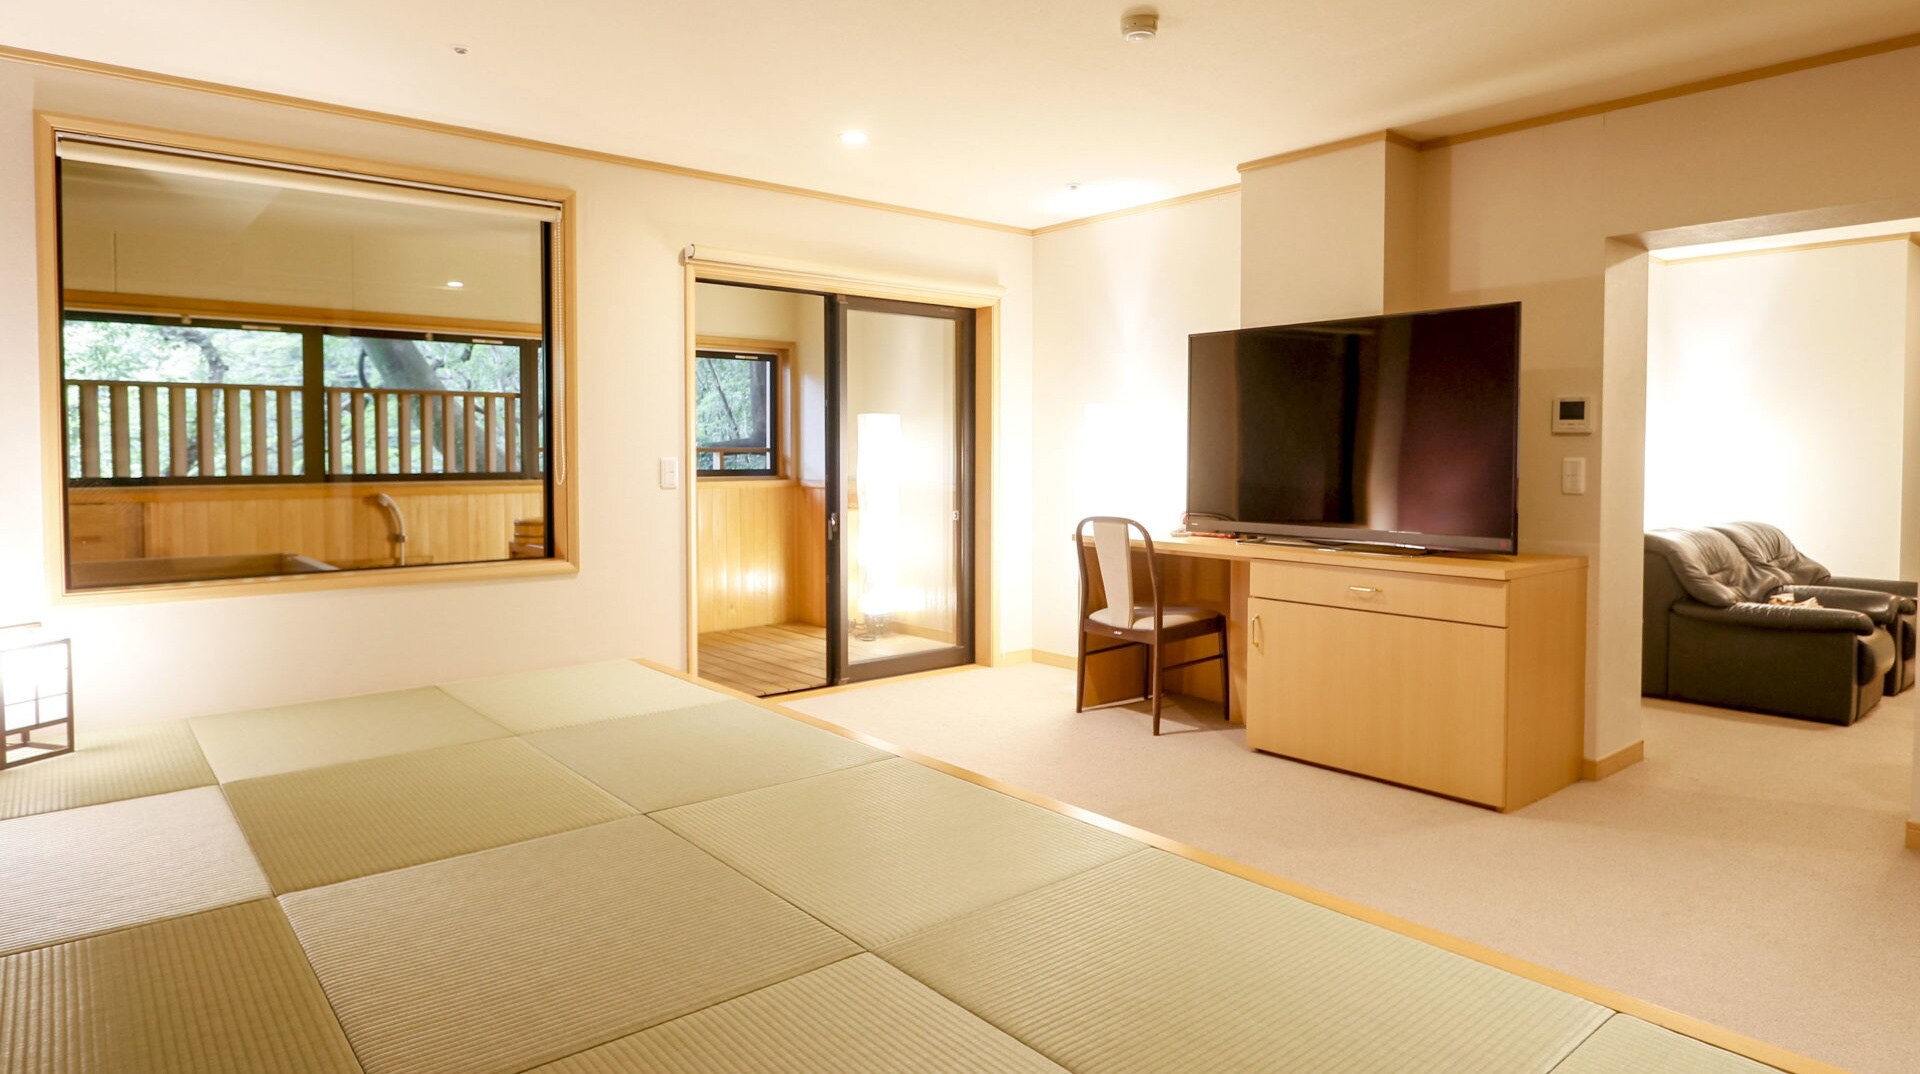 【하나신루：시온】 거실, 일본식 방, 오름의 3개의 에리어로 구성된 일본식 서양실